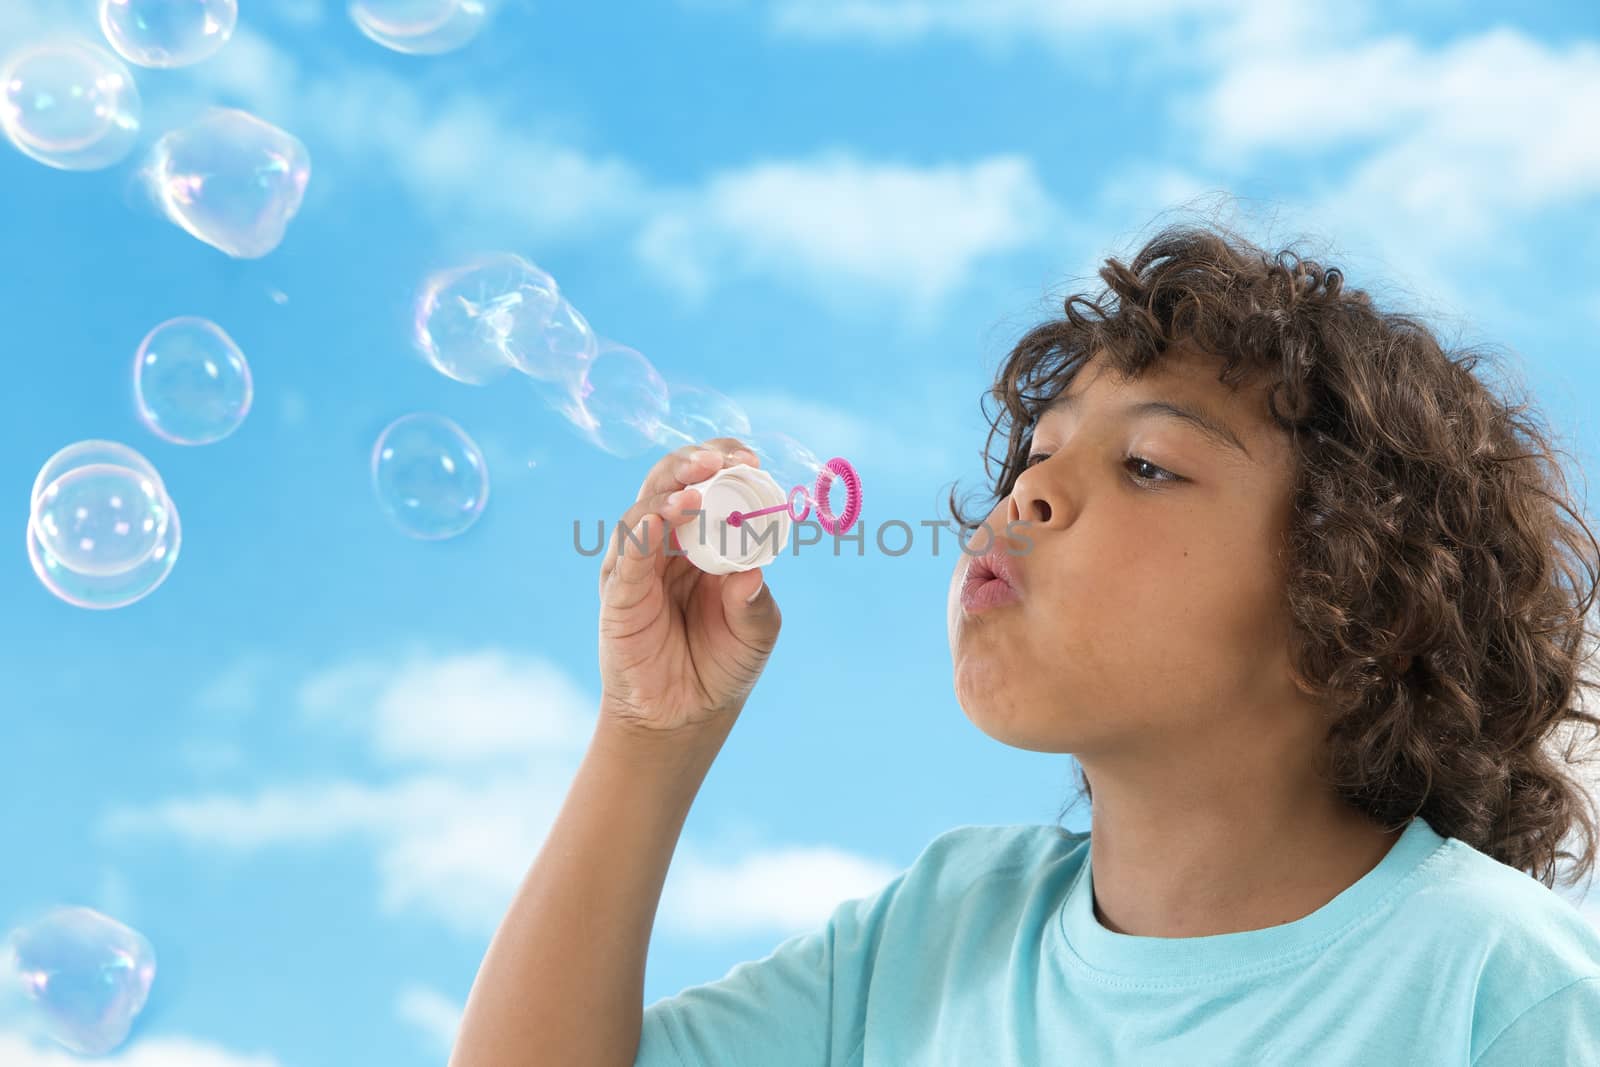 Boy blows up soap bubbles